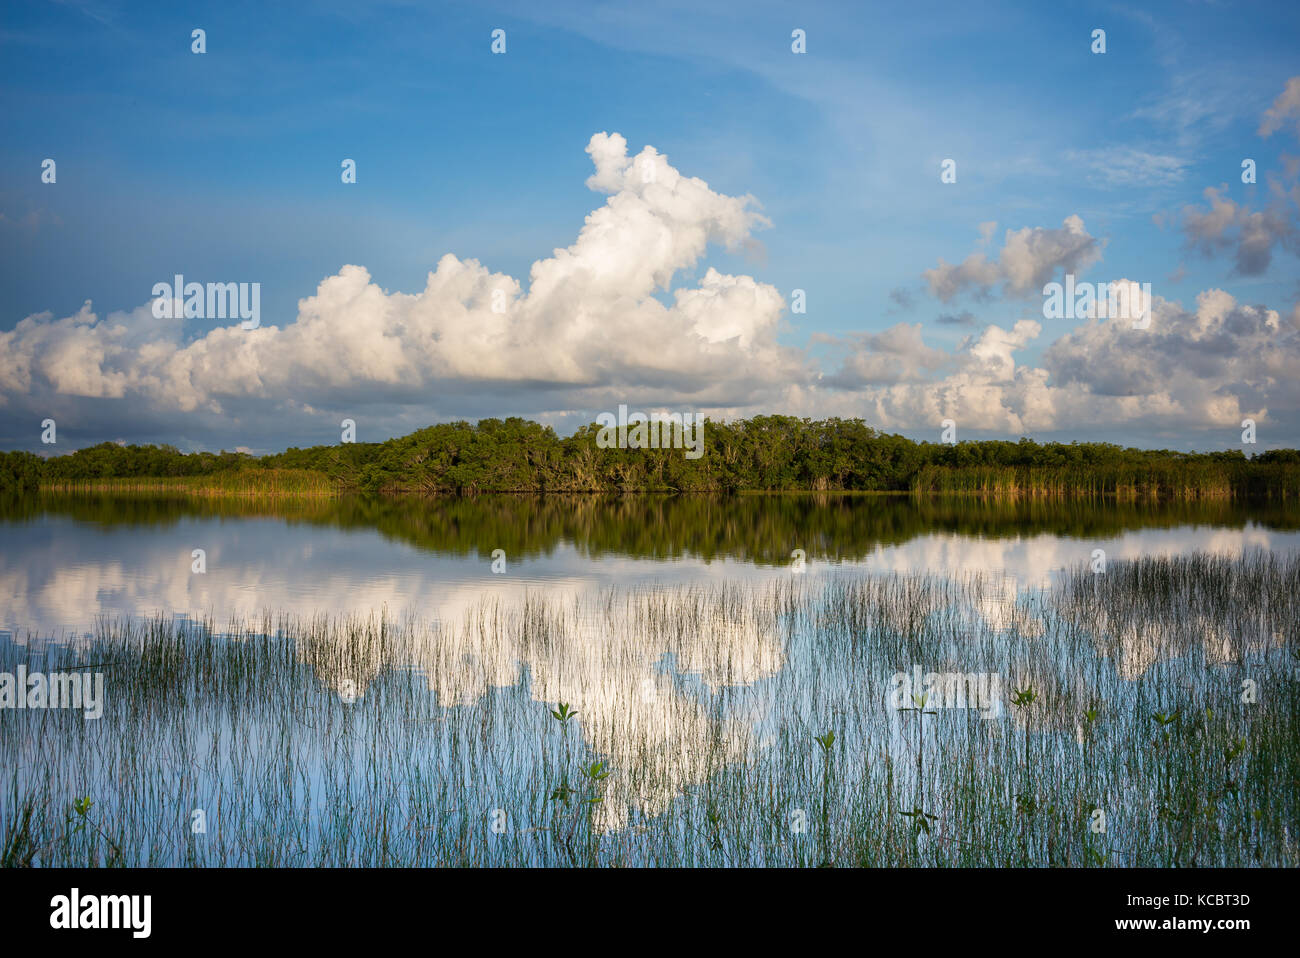 Parco nazionale delle Everglades paesaggio. Everglades National Park è situato nel sud della Florida, Stati Uniti. Habitat di coccodrilli americani. Foto Stock